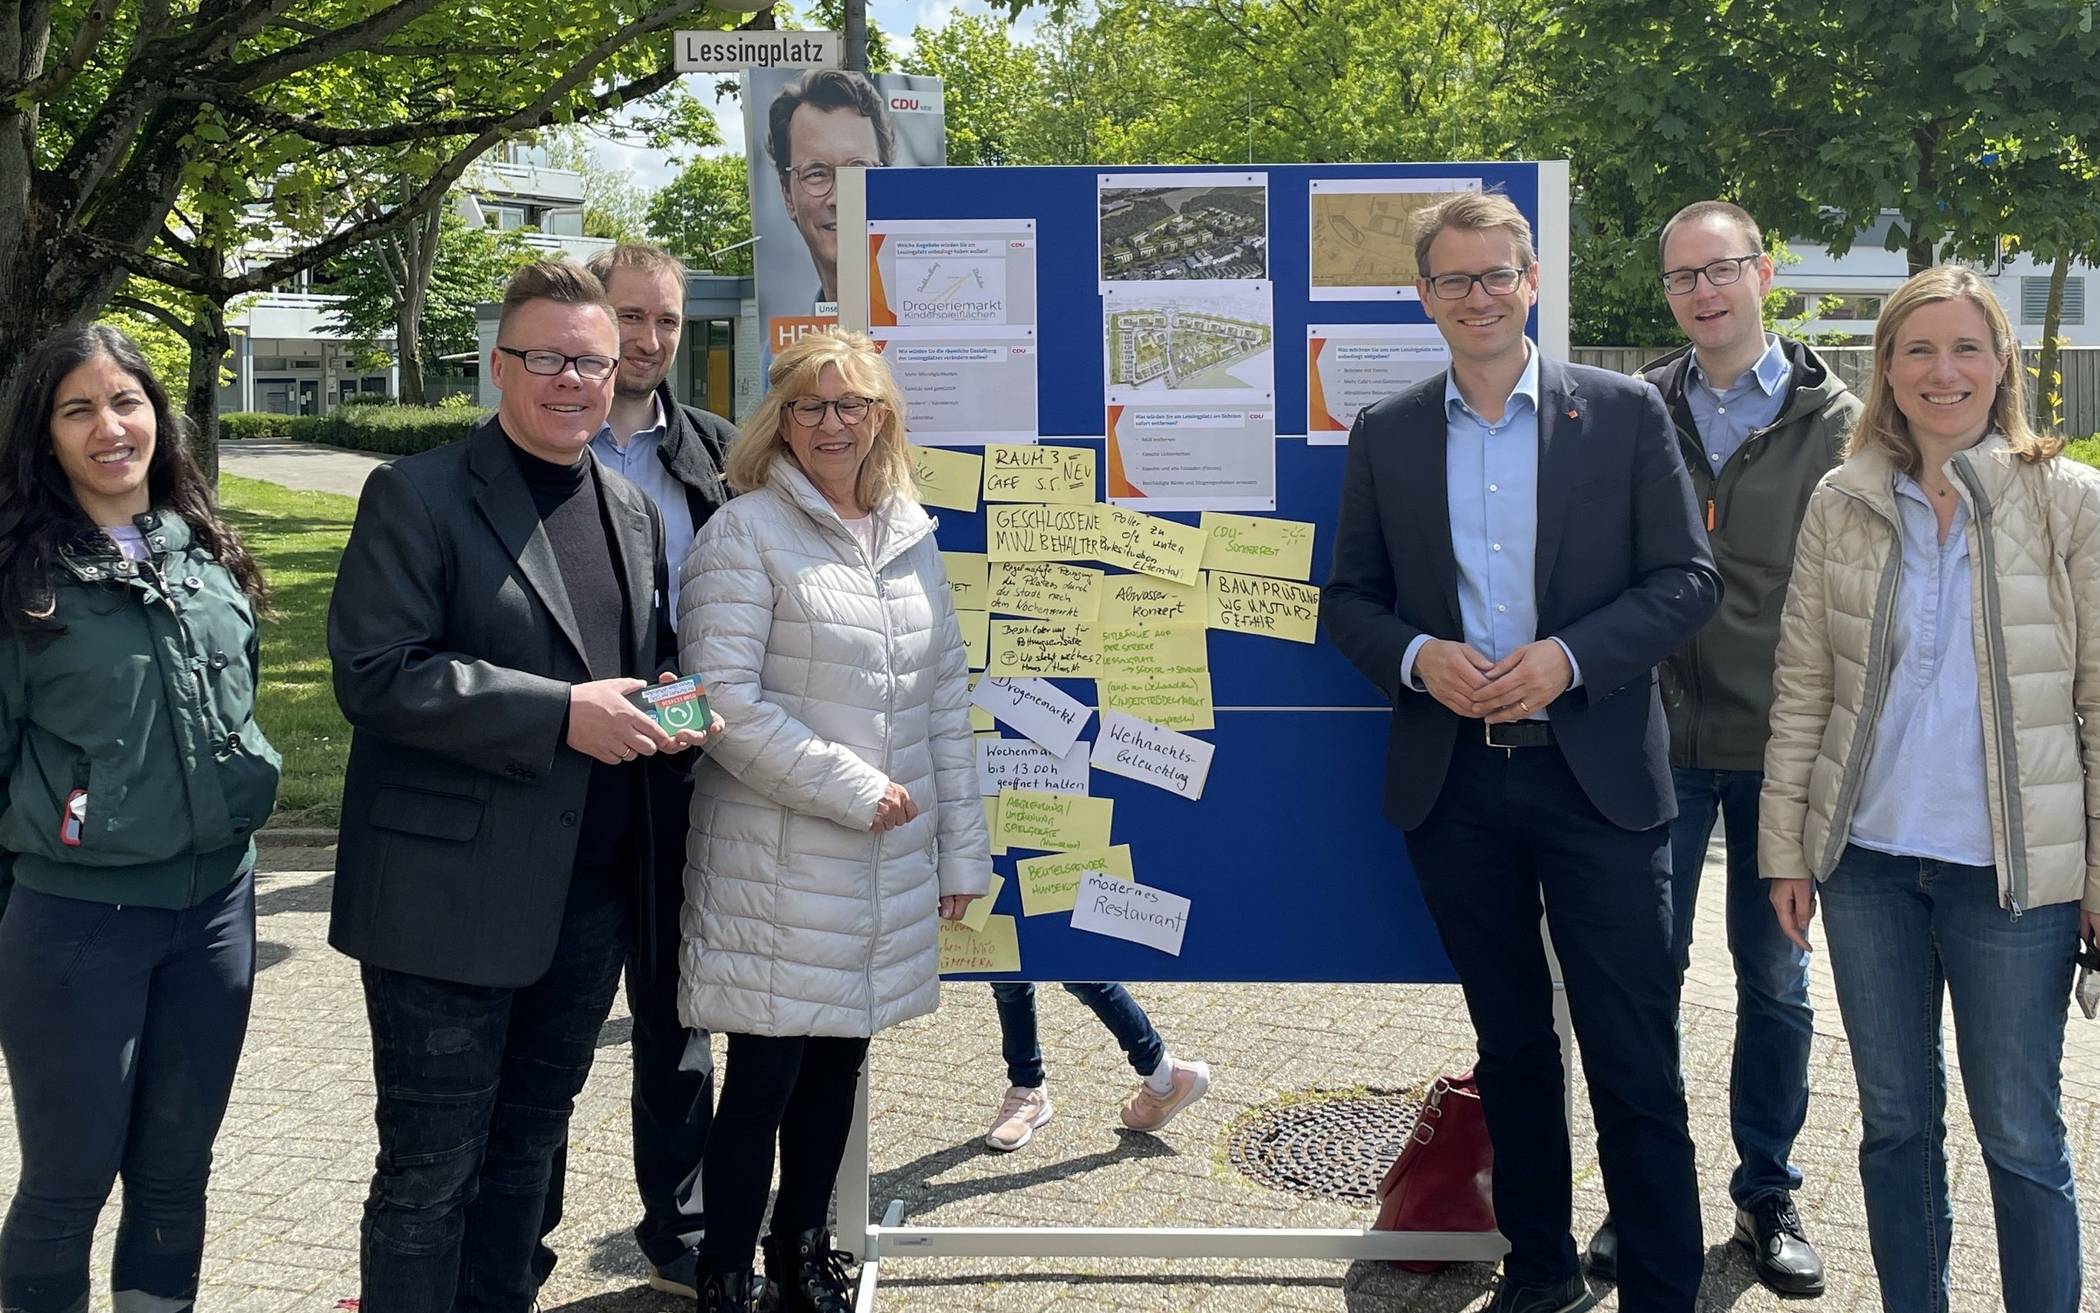  Der CDU-Ortsverband Norf hat die Bürger zum Thema Lessingplatz befragt. 